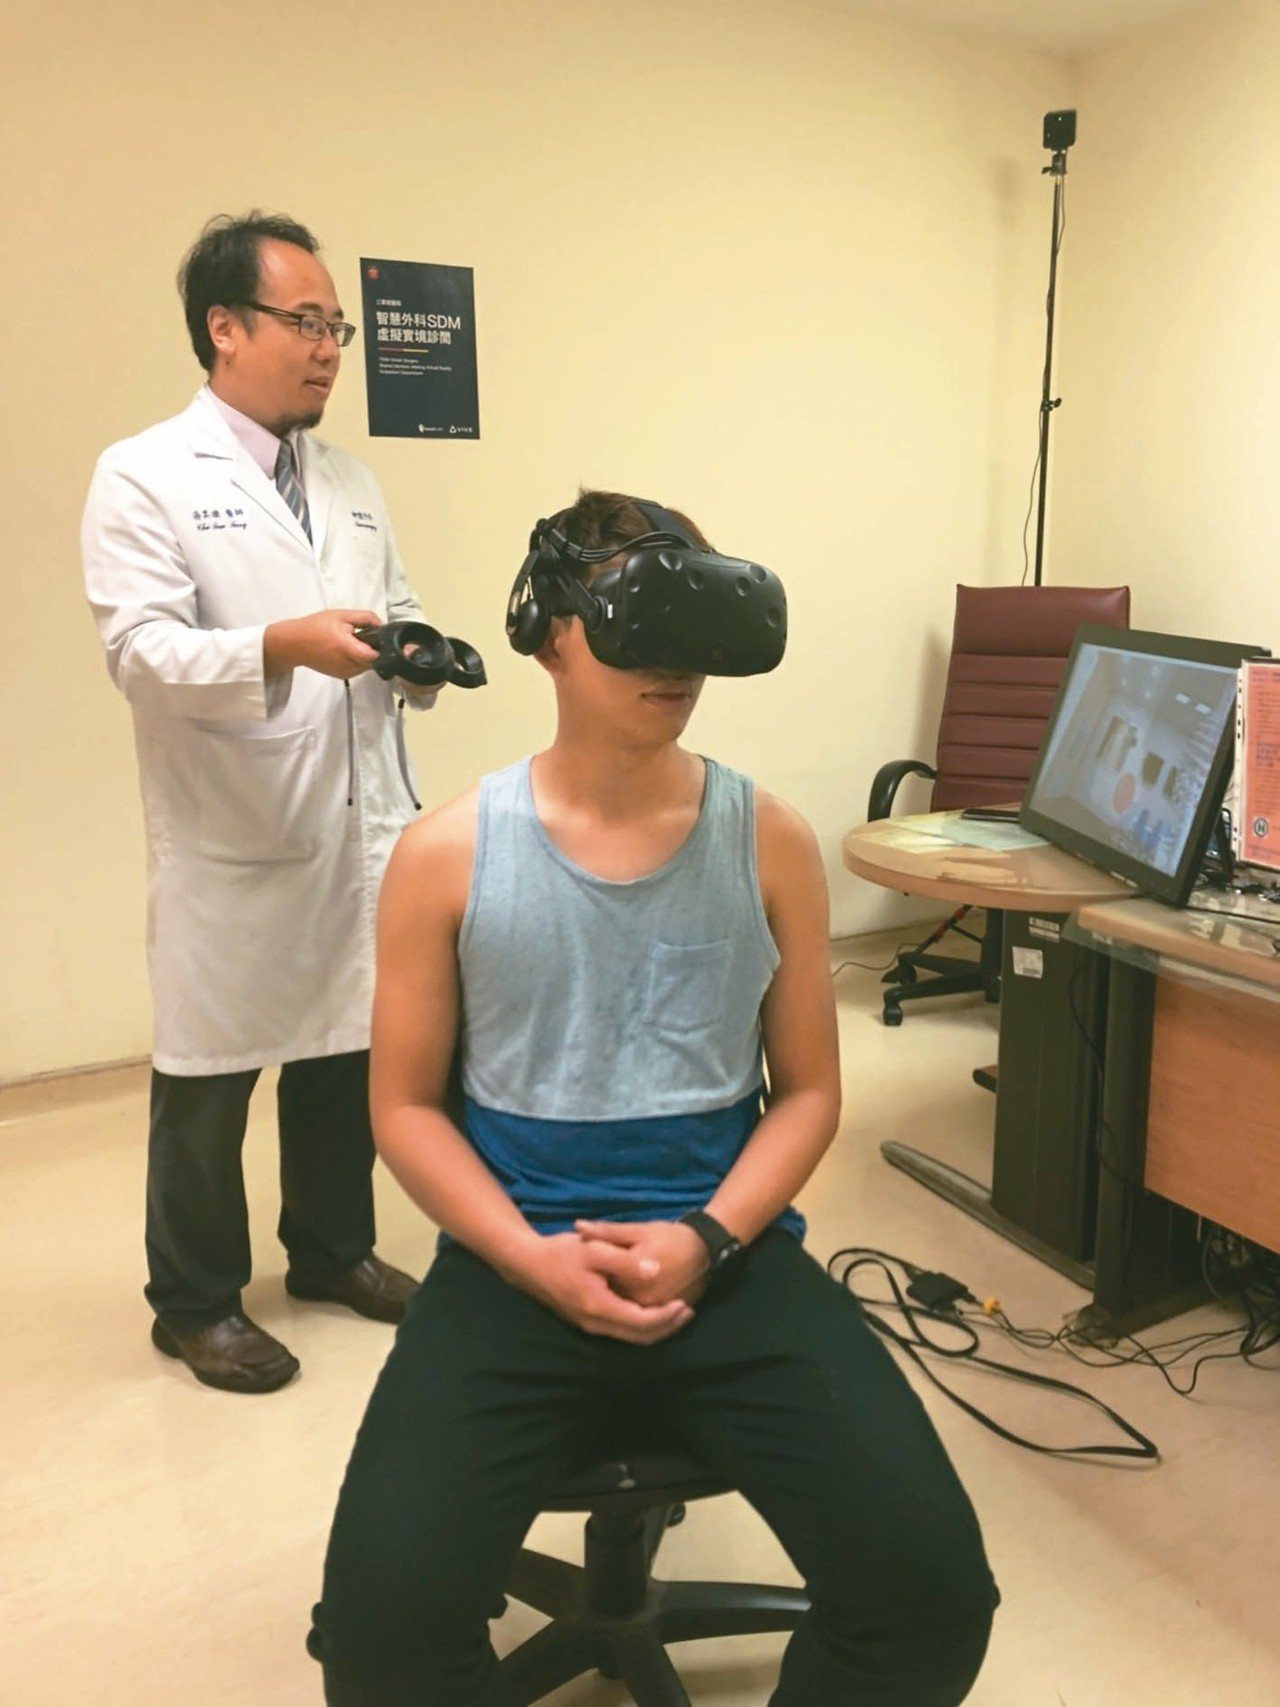 醫師在虛擬實境診間(VR)解說病灶位置及發生症狀，透過VR虛擬實境，可突破溝通困難，讓病人清楚明瞭手術部位空間結構上的關係。<br />圖／湯其暾醫師提供